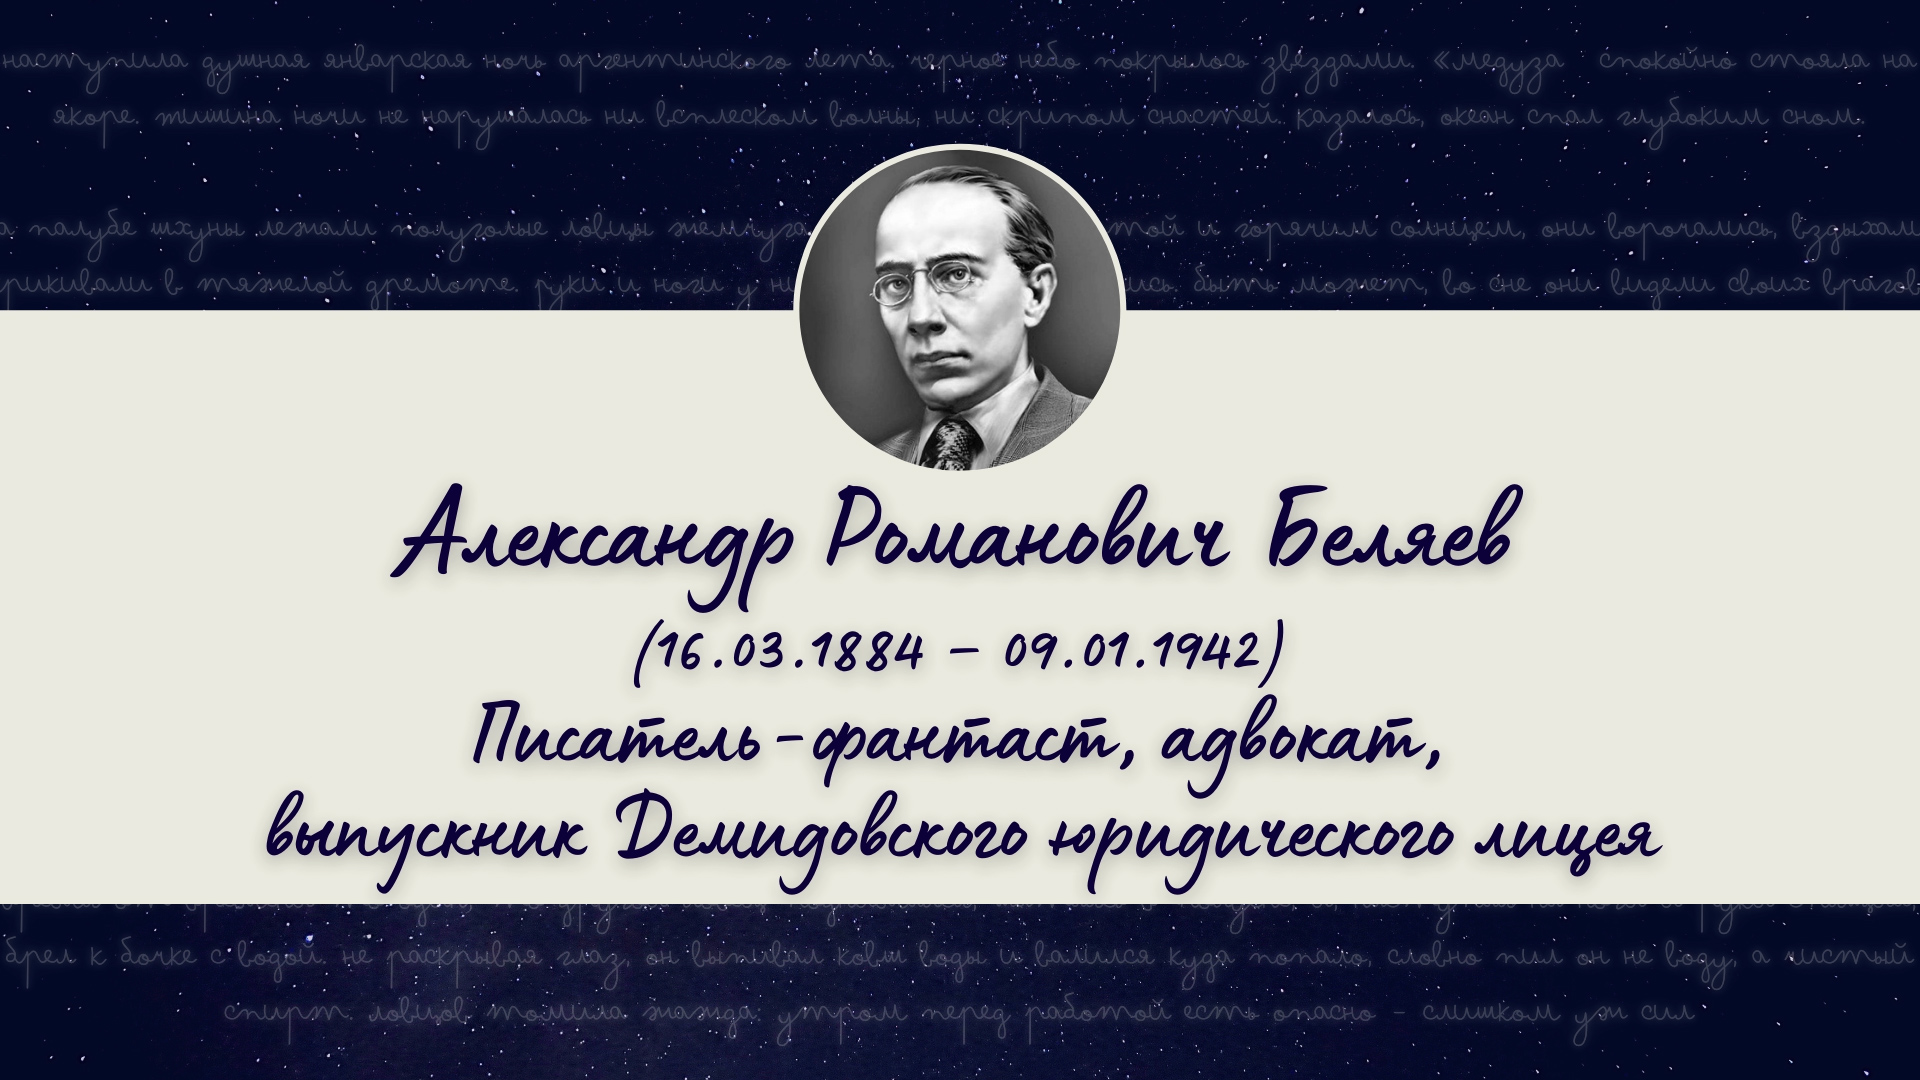 Александр Беляев — выпускник Демидовского юридического лицея